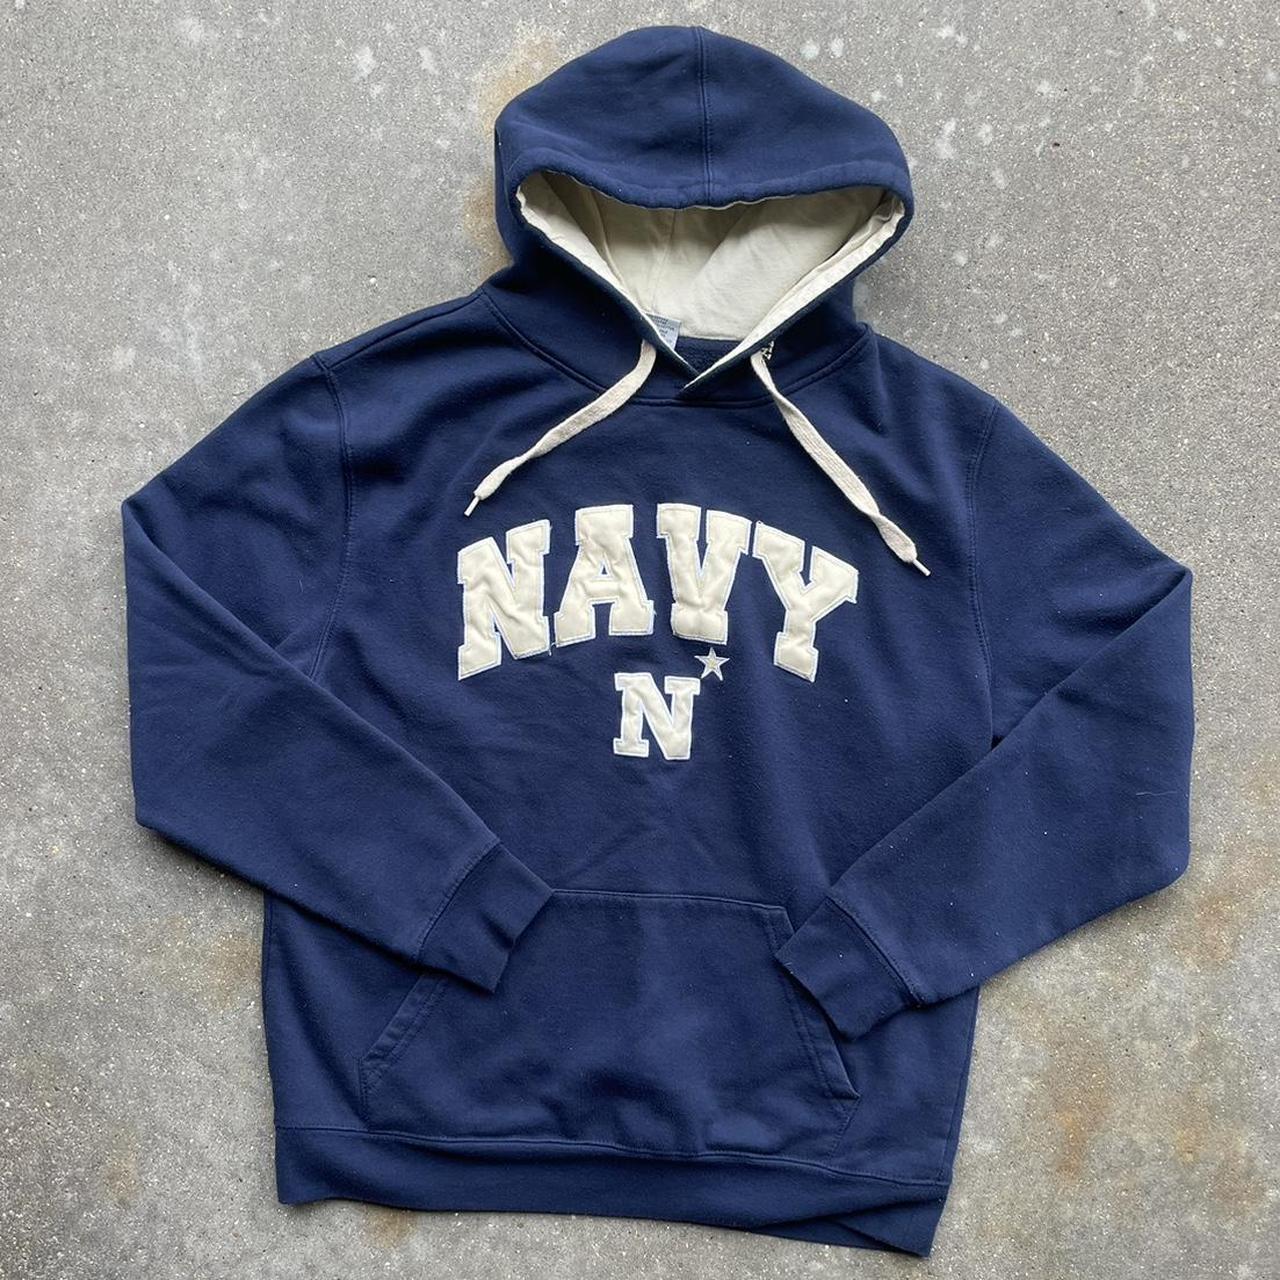 00s vintage navy naval academy hoodie. size large... - Depop